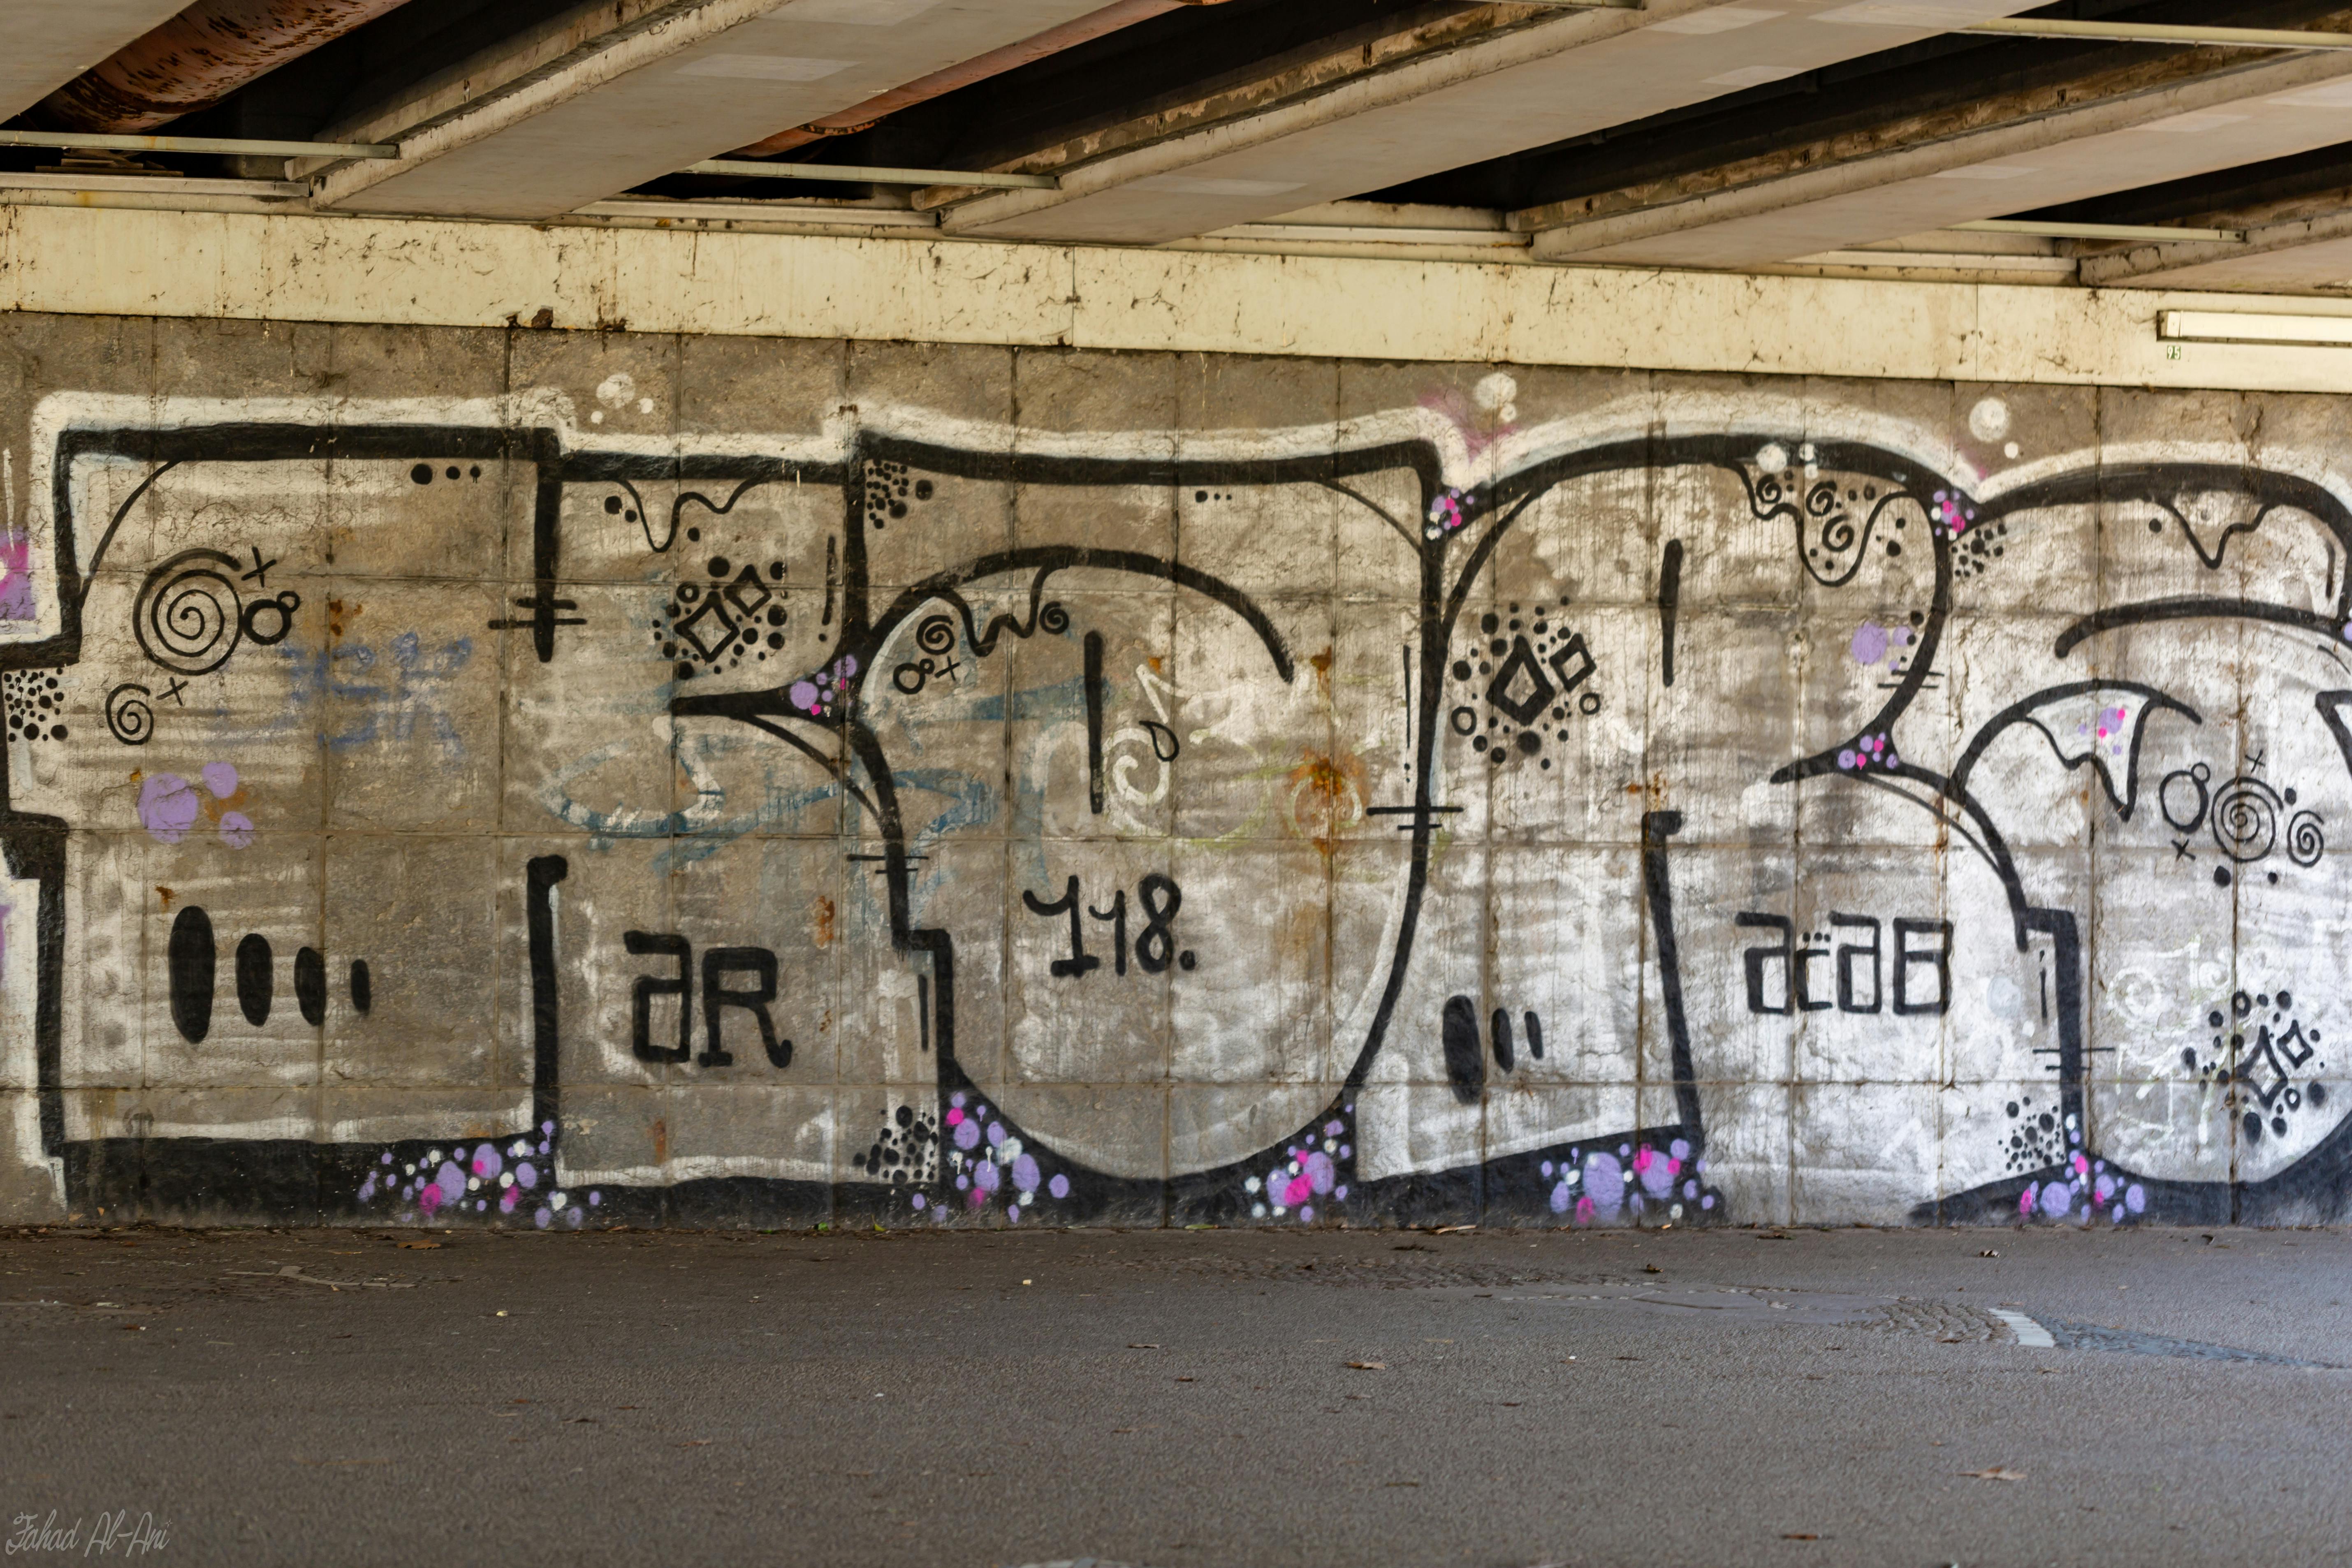 Free stock photo of graffiti